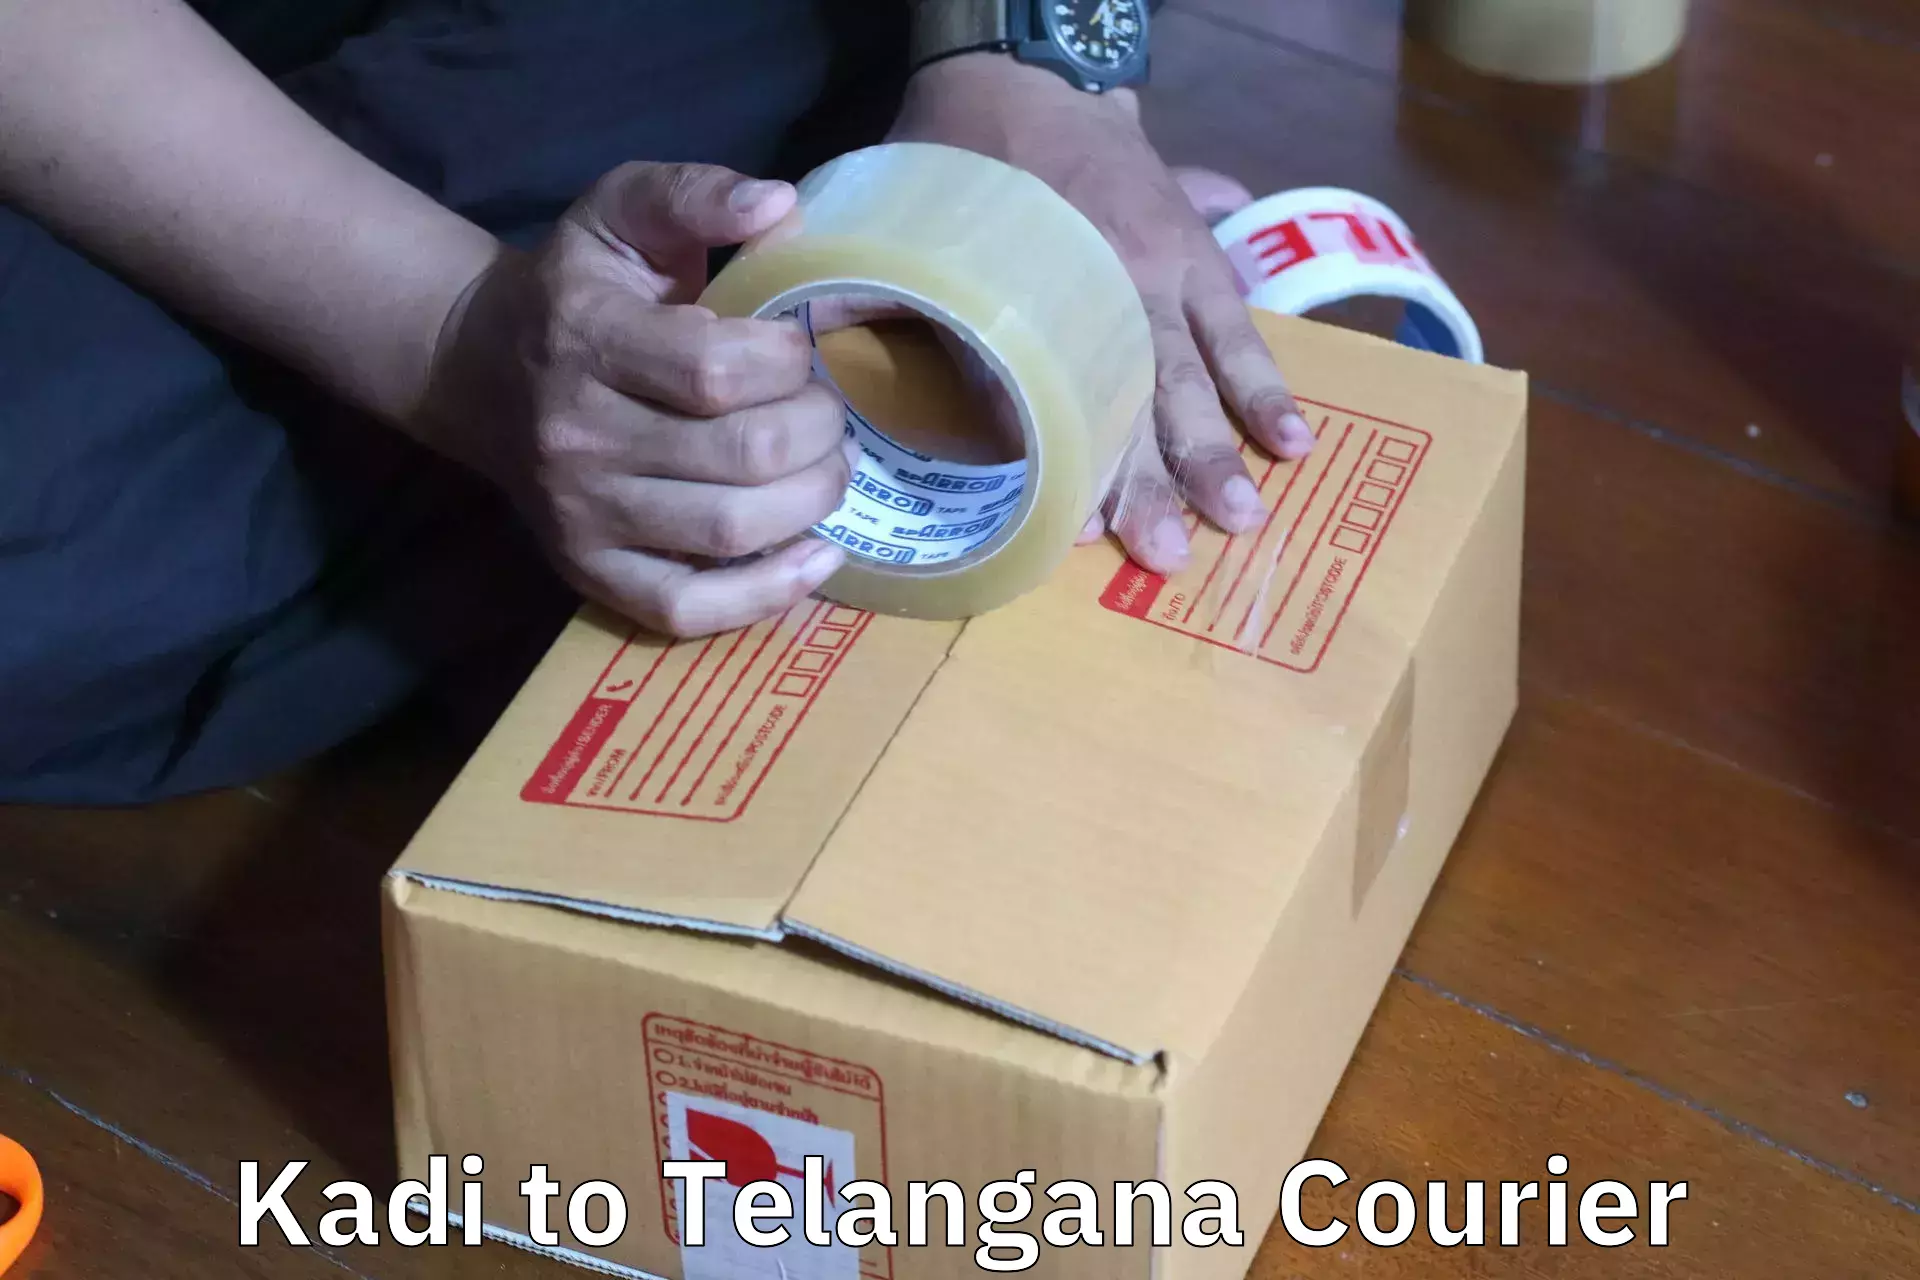 Furniture moving experts Kadi to Telangana